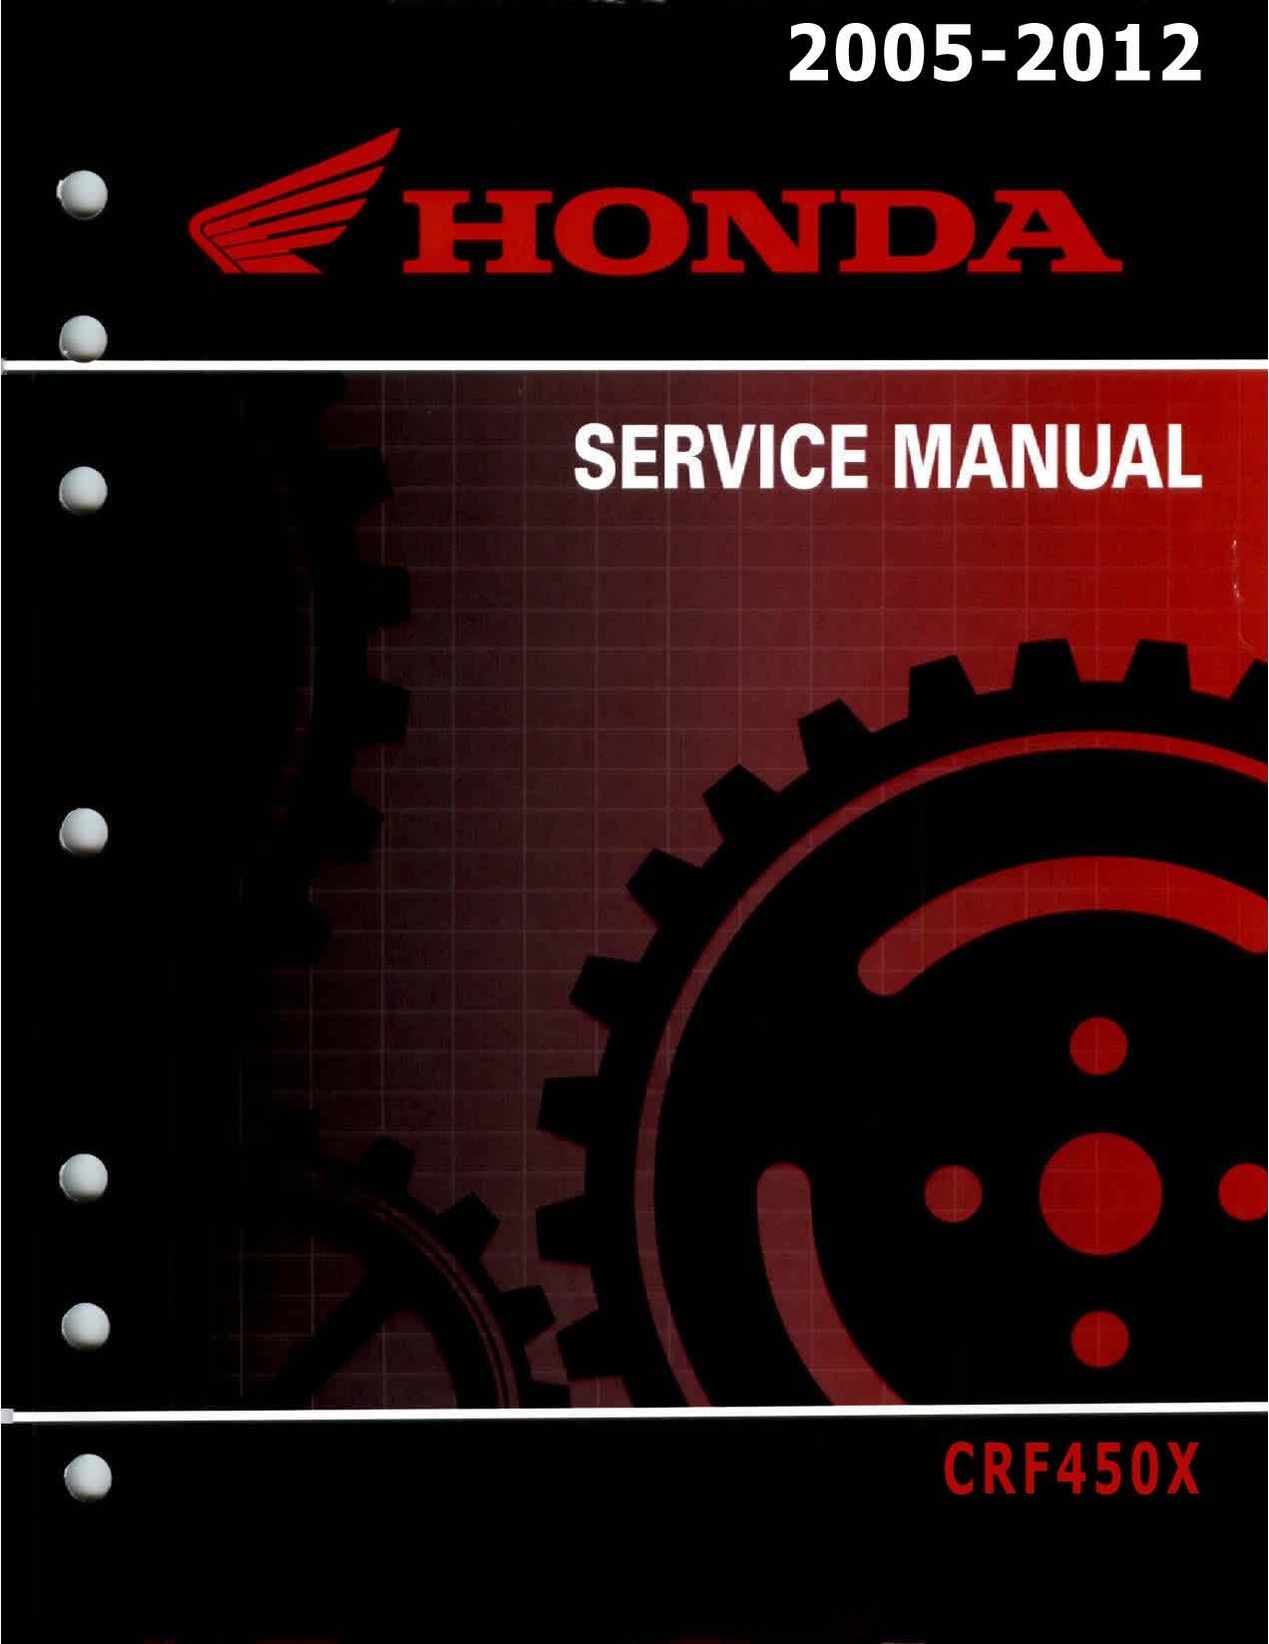 FileHonda CRF450X 20052012 Service Manual Repair.pdf CycleChaos